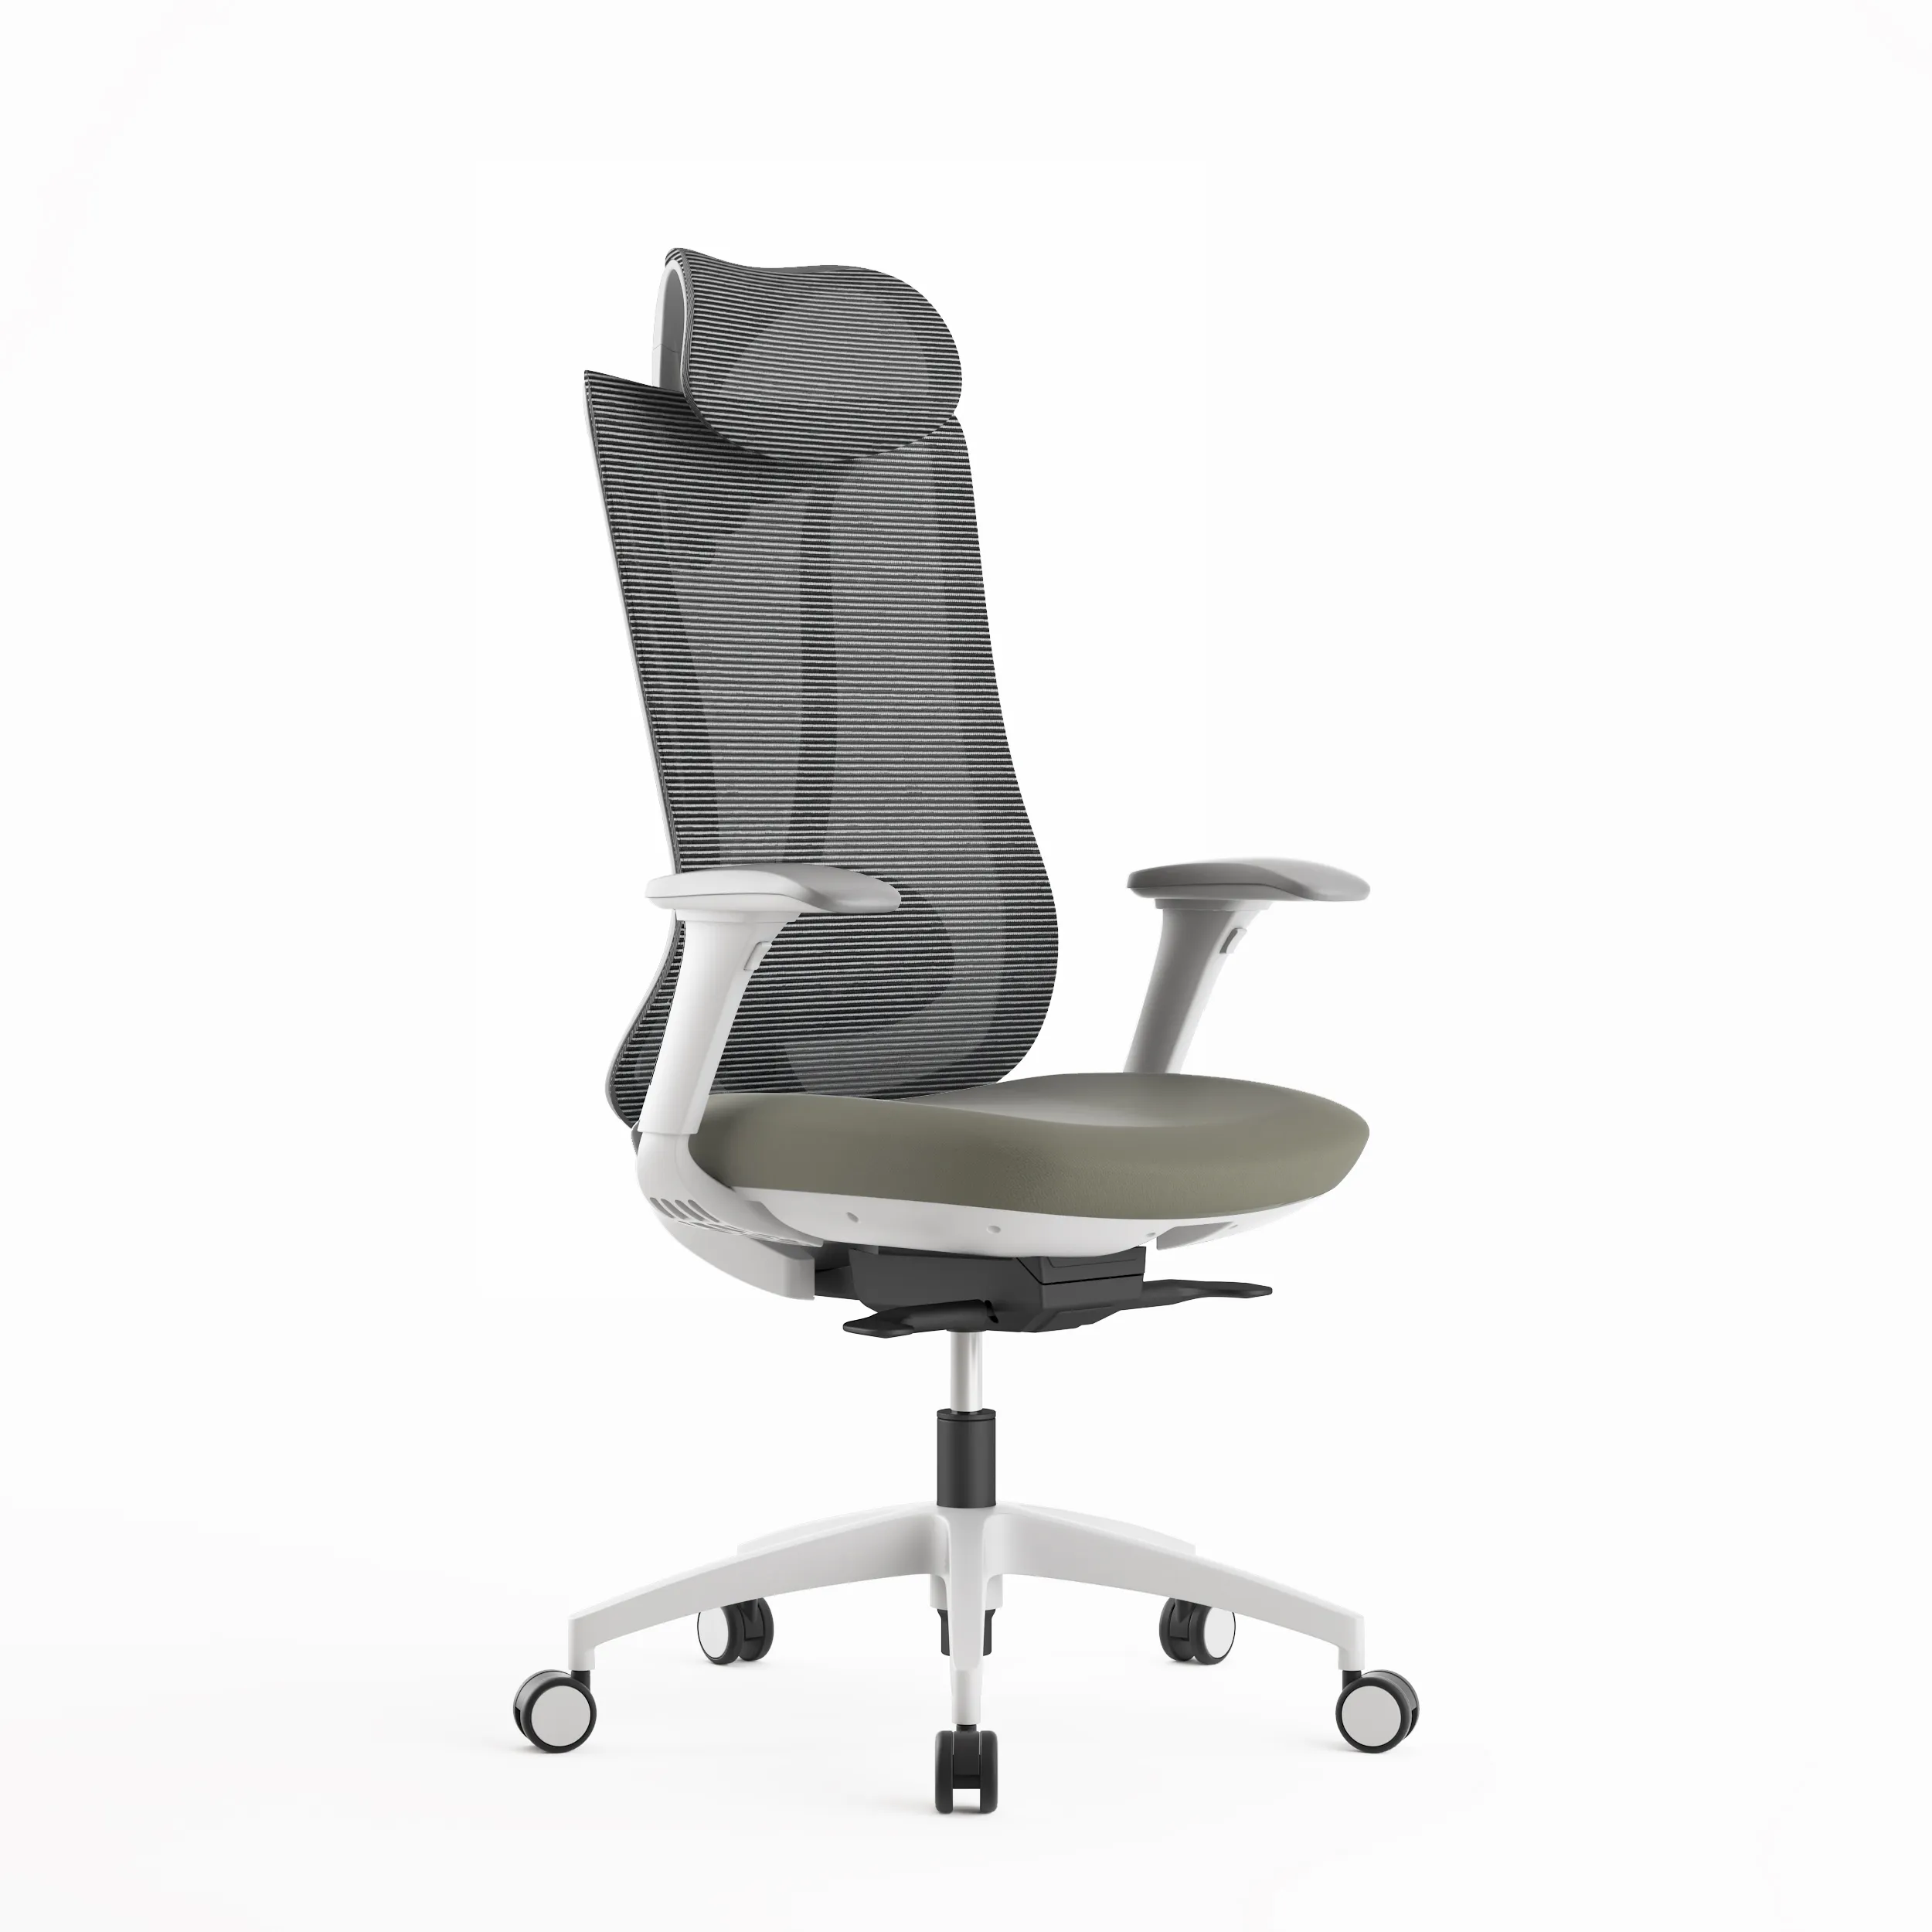 Rotazione di 360 gradi confortevole Design moderno attivato grande e alta sedia da ufficio ergonomica in Mesh posteriore